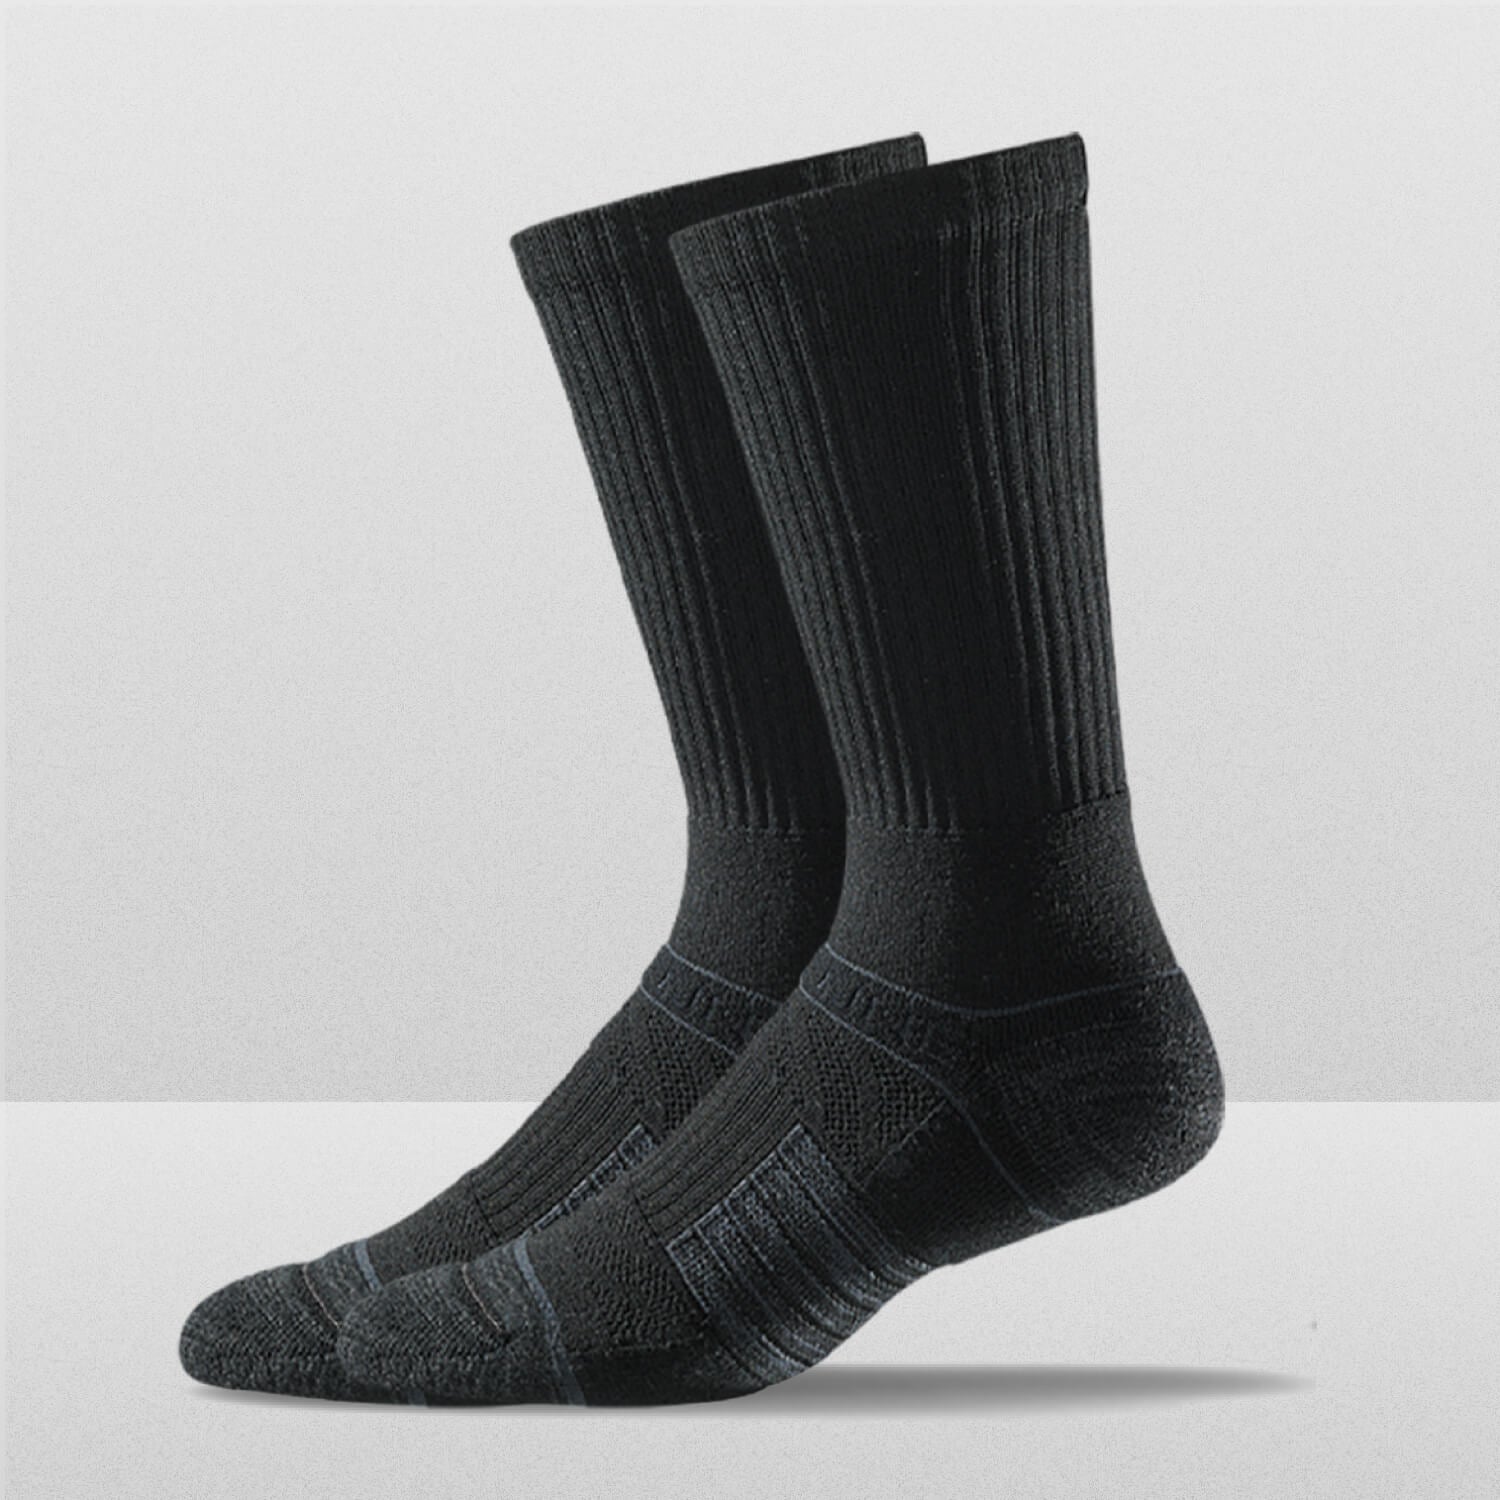 Inspired Black LV Stockings (Medium)